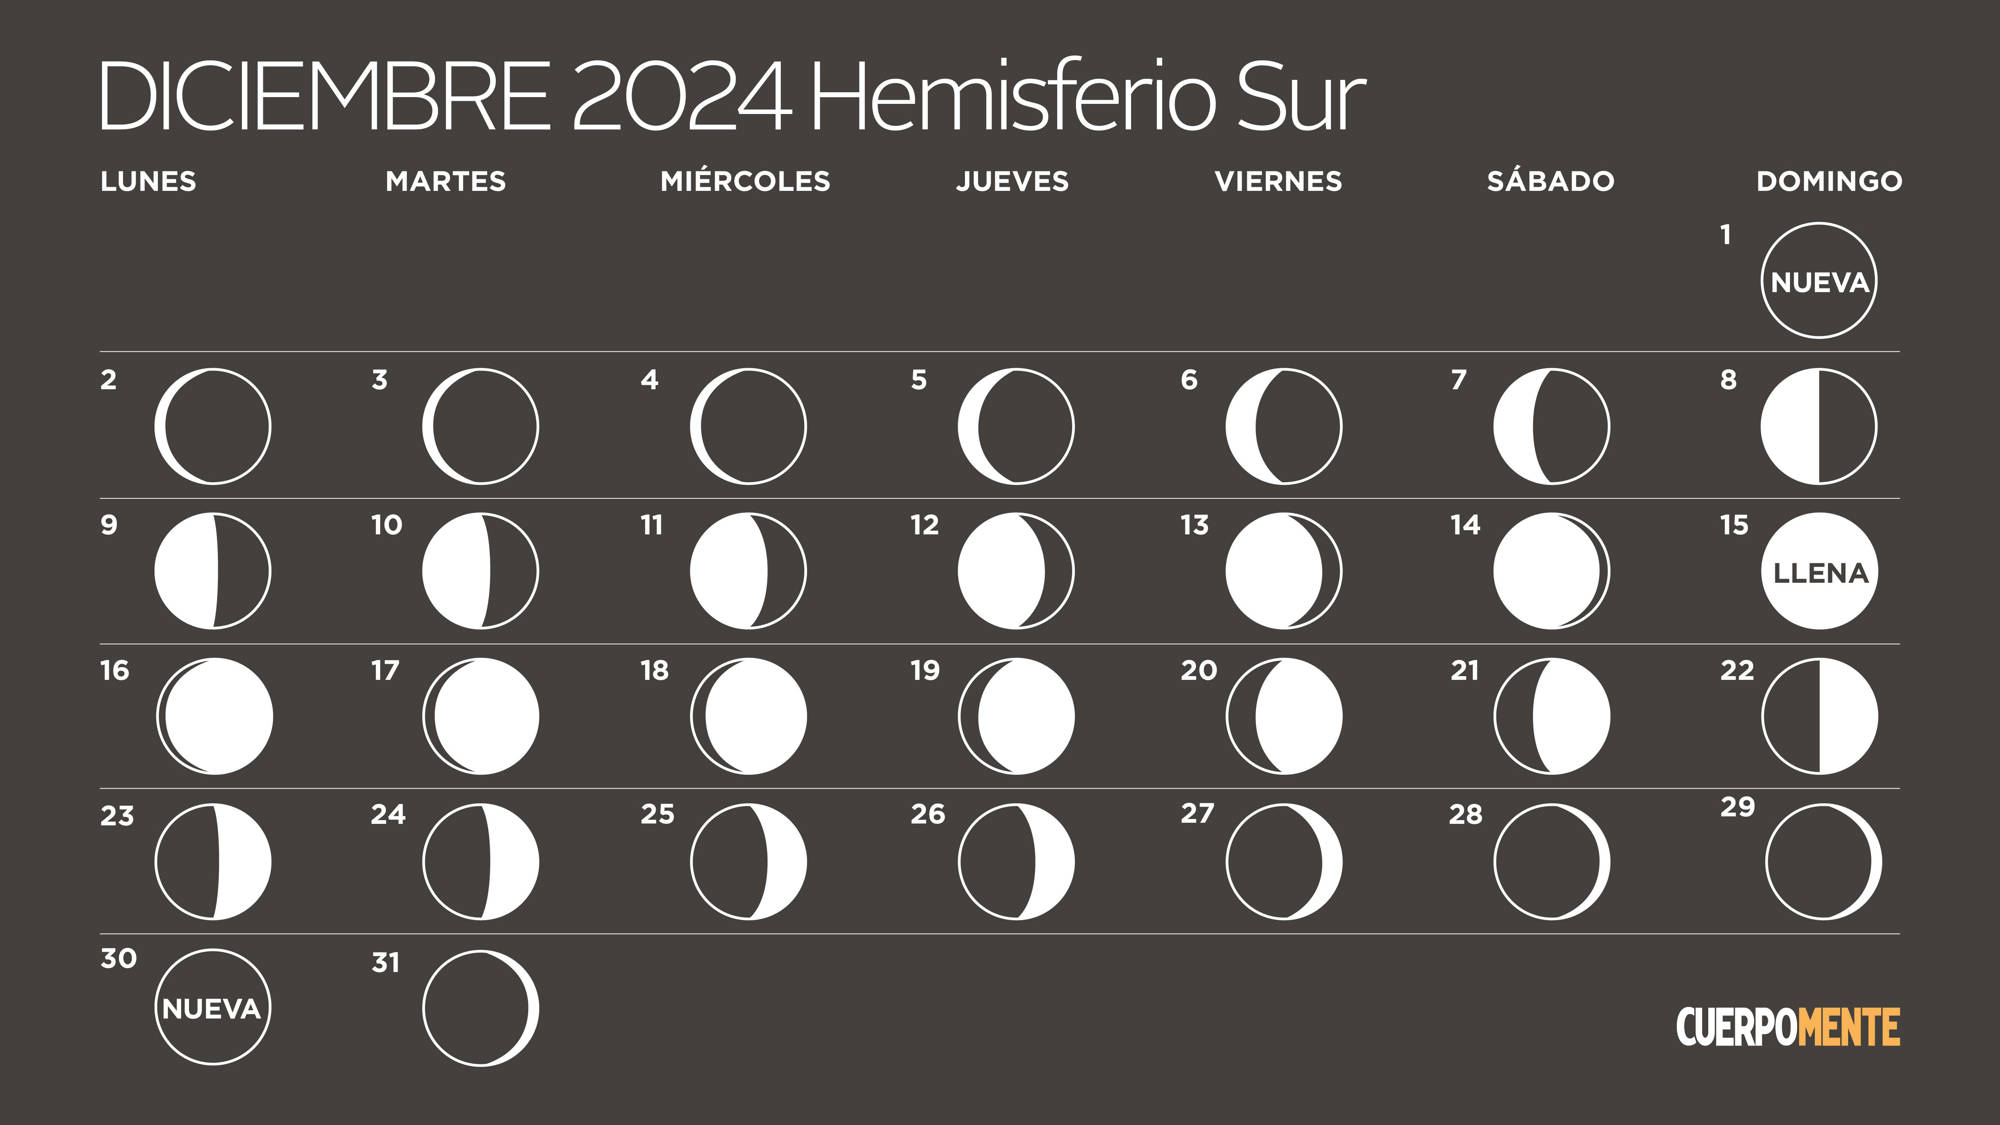 Calendario lunar diciembre 2024 hemisferio sur